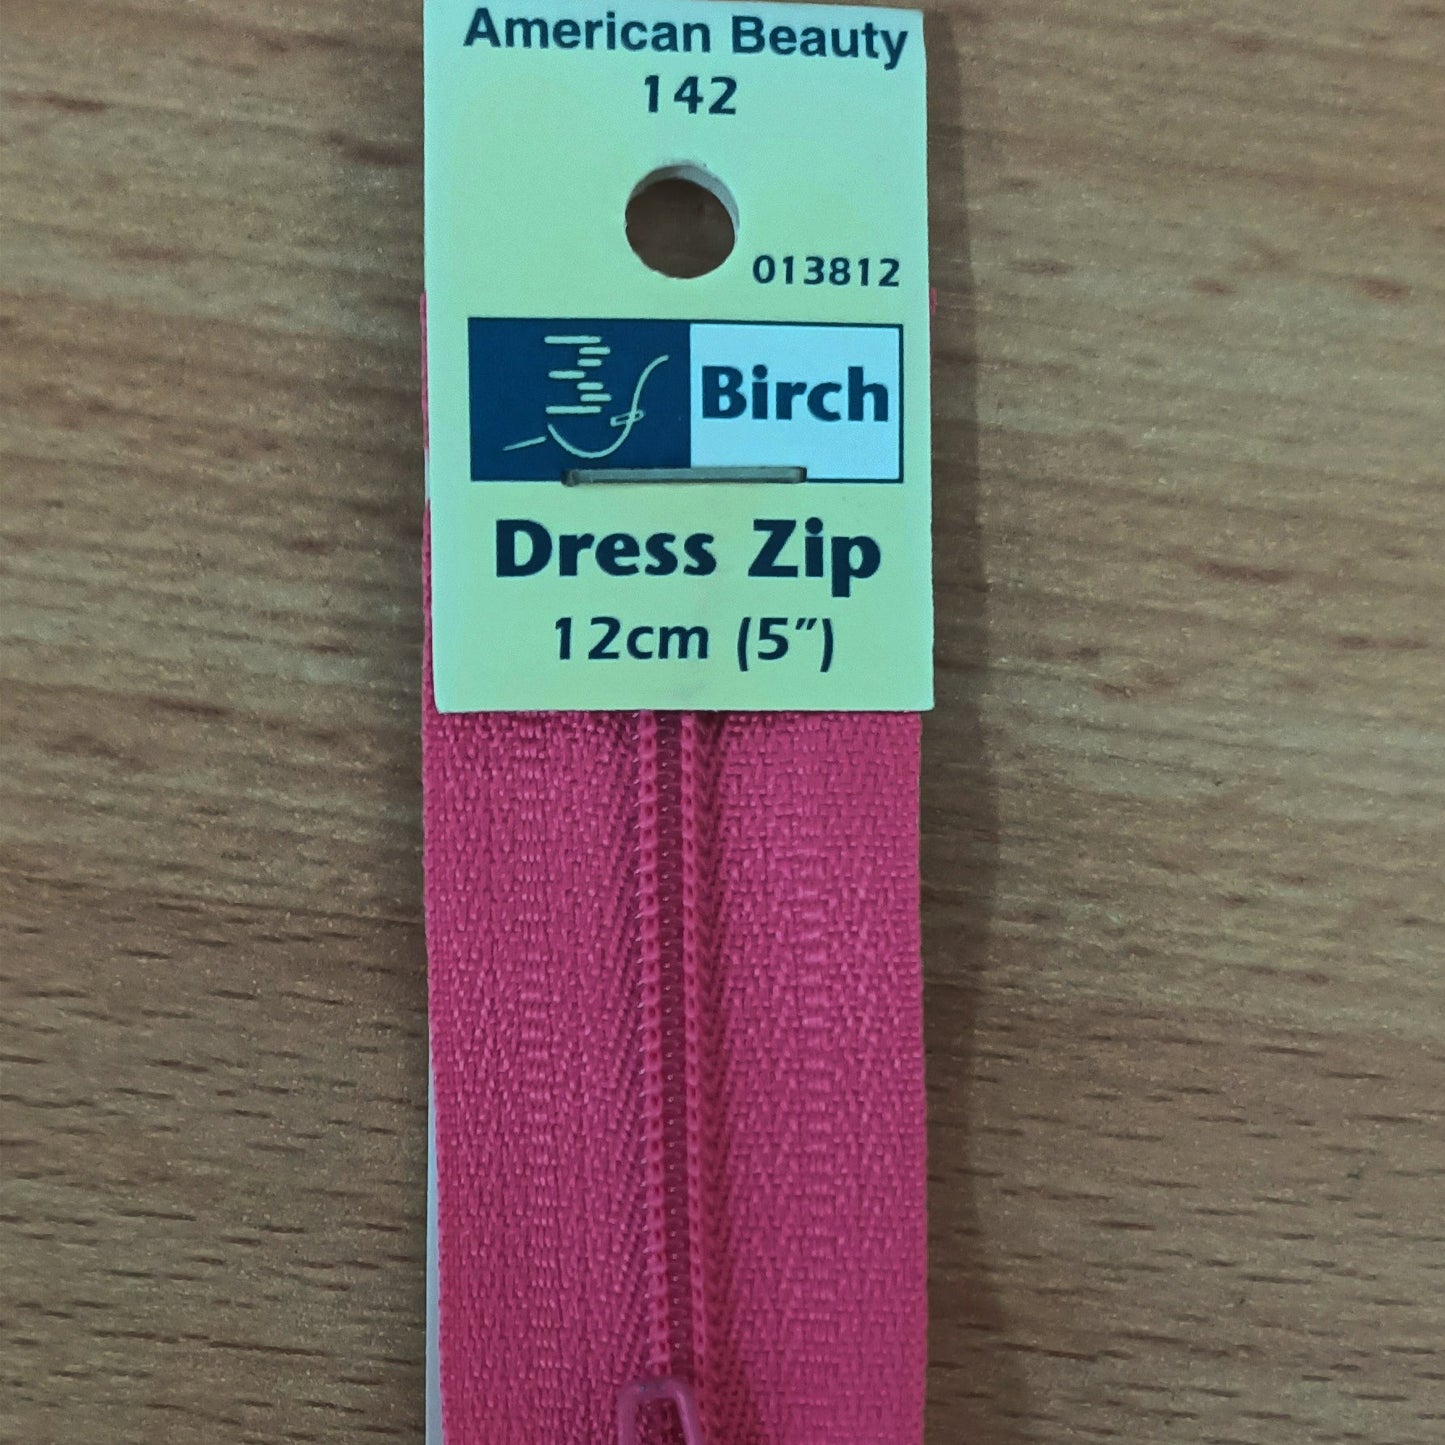 Dress Zip 12cm (5")